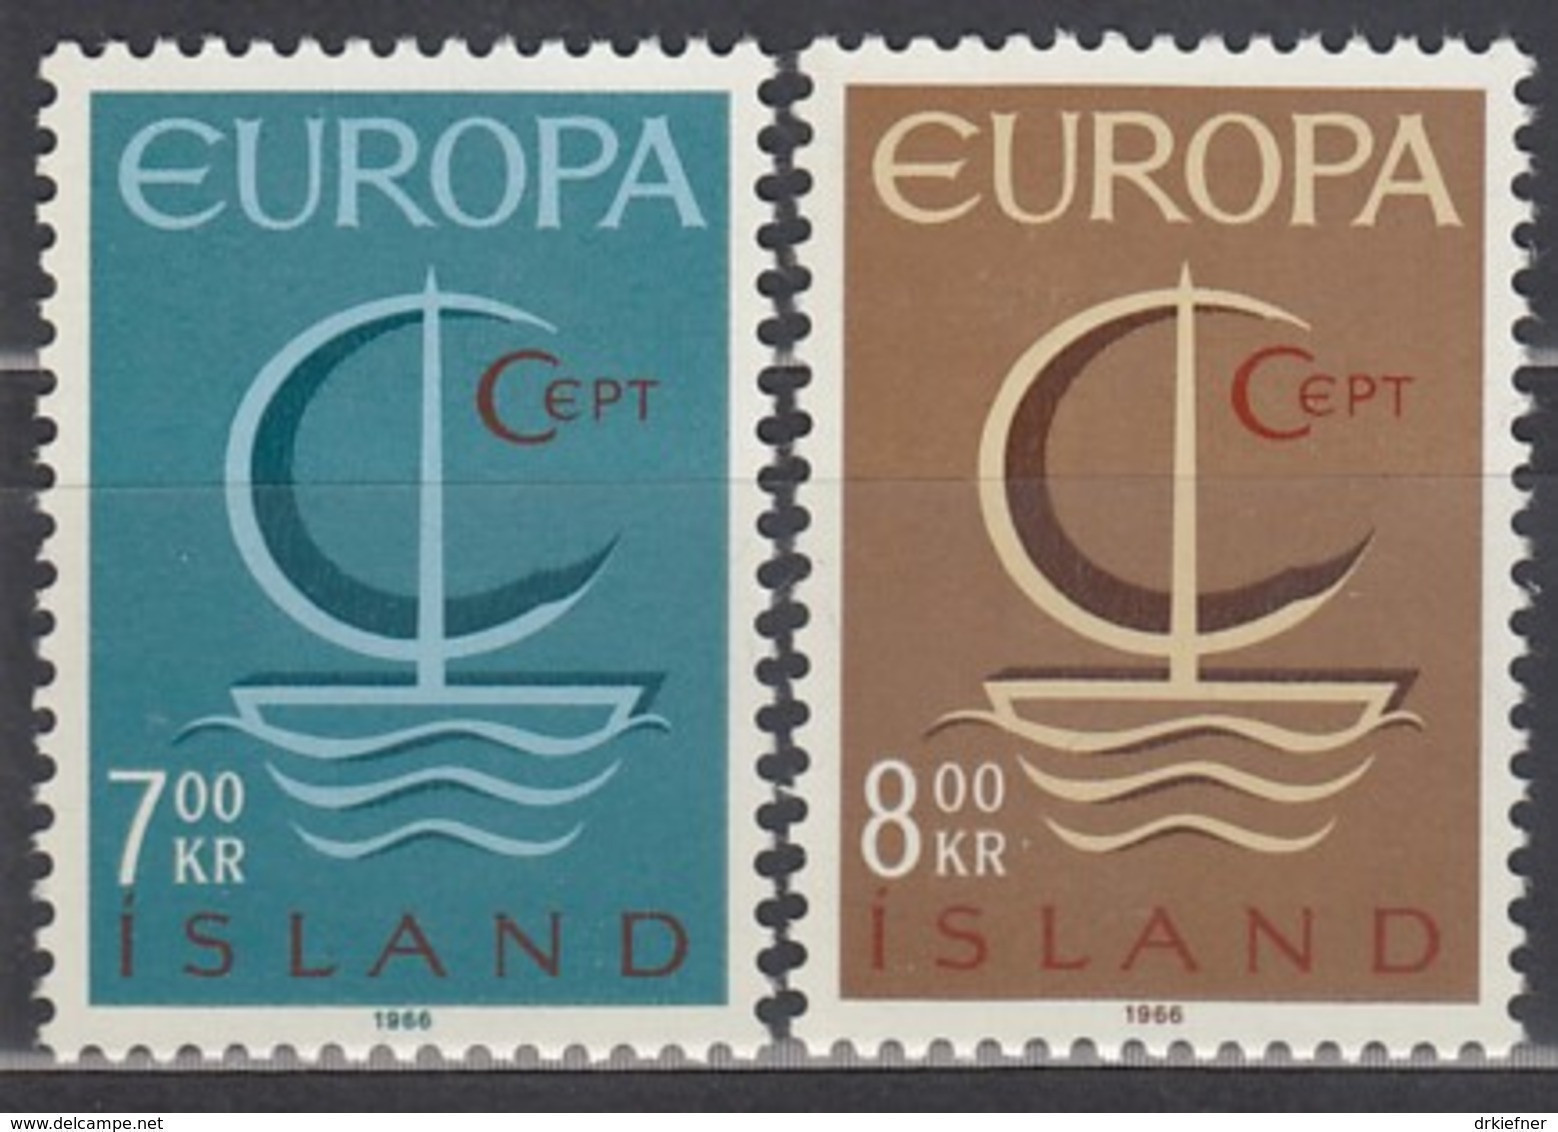 ISLAND  404-405, Postfrisch **, Europa CEPT 1966 - Ungebraucht